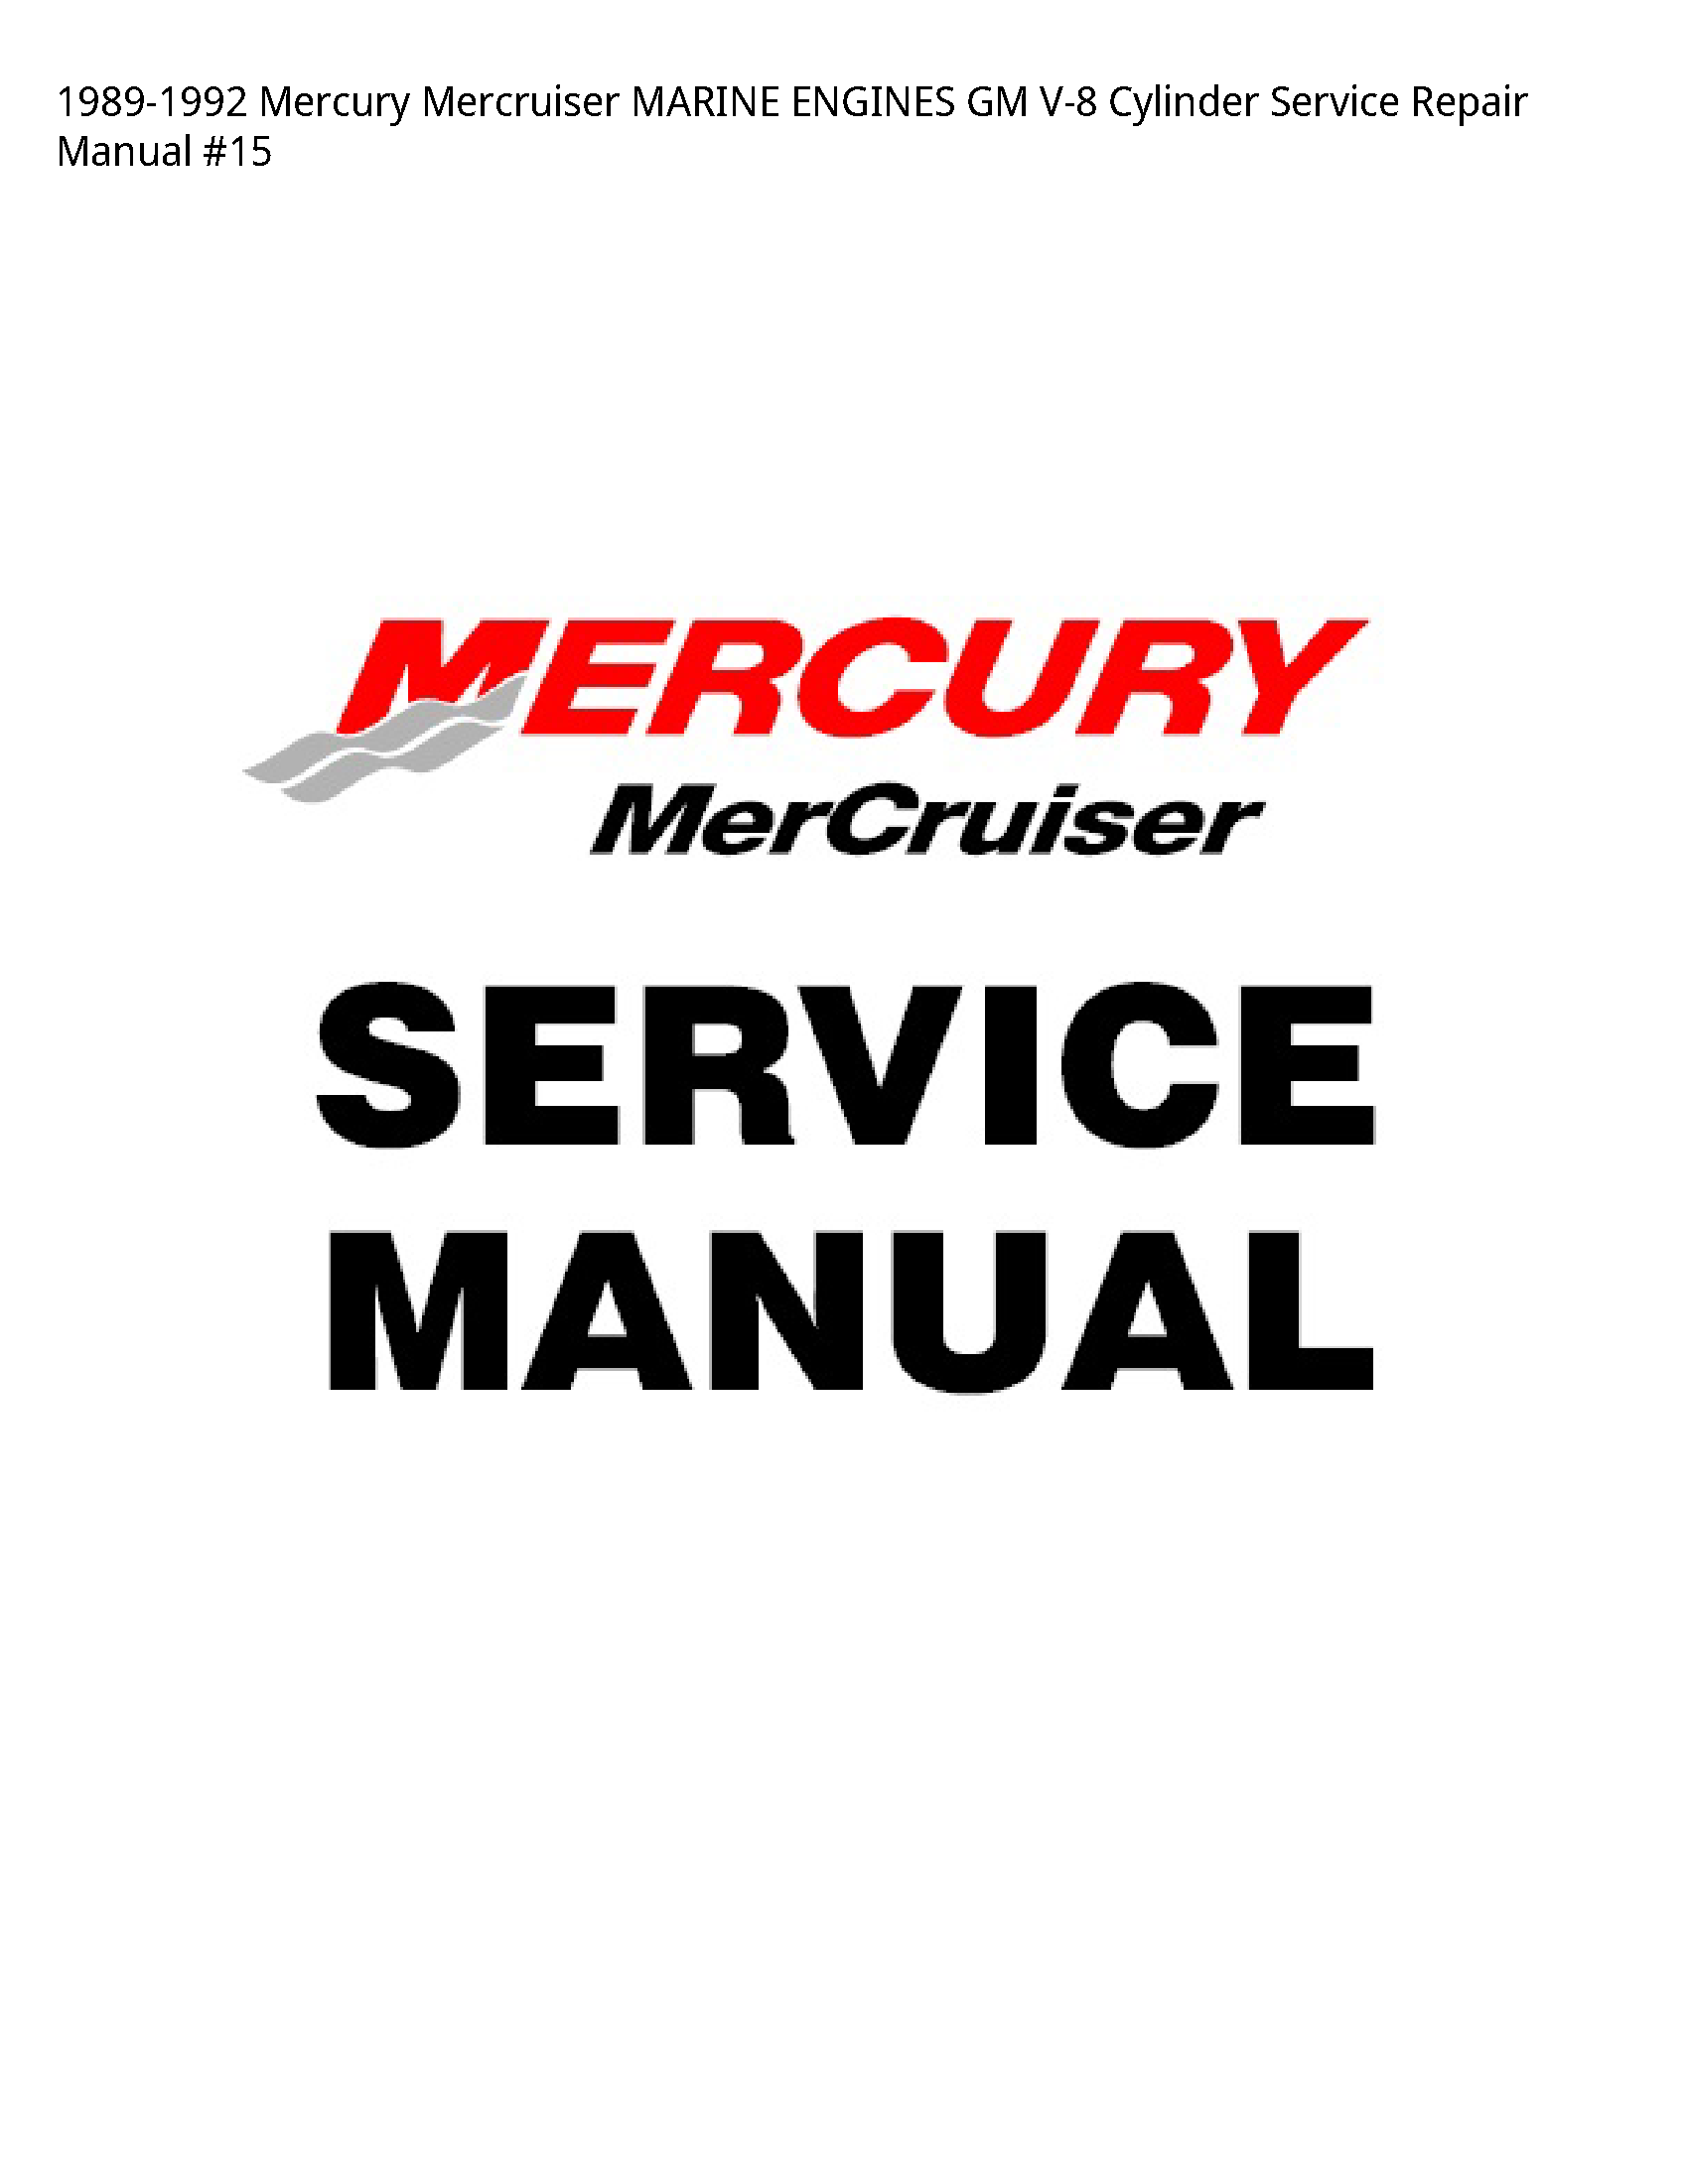 Mercury V-8 Mercruiser MARINE ENGINES GM Cylinder manual